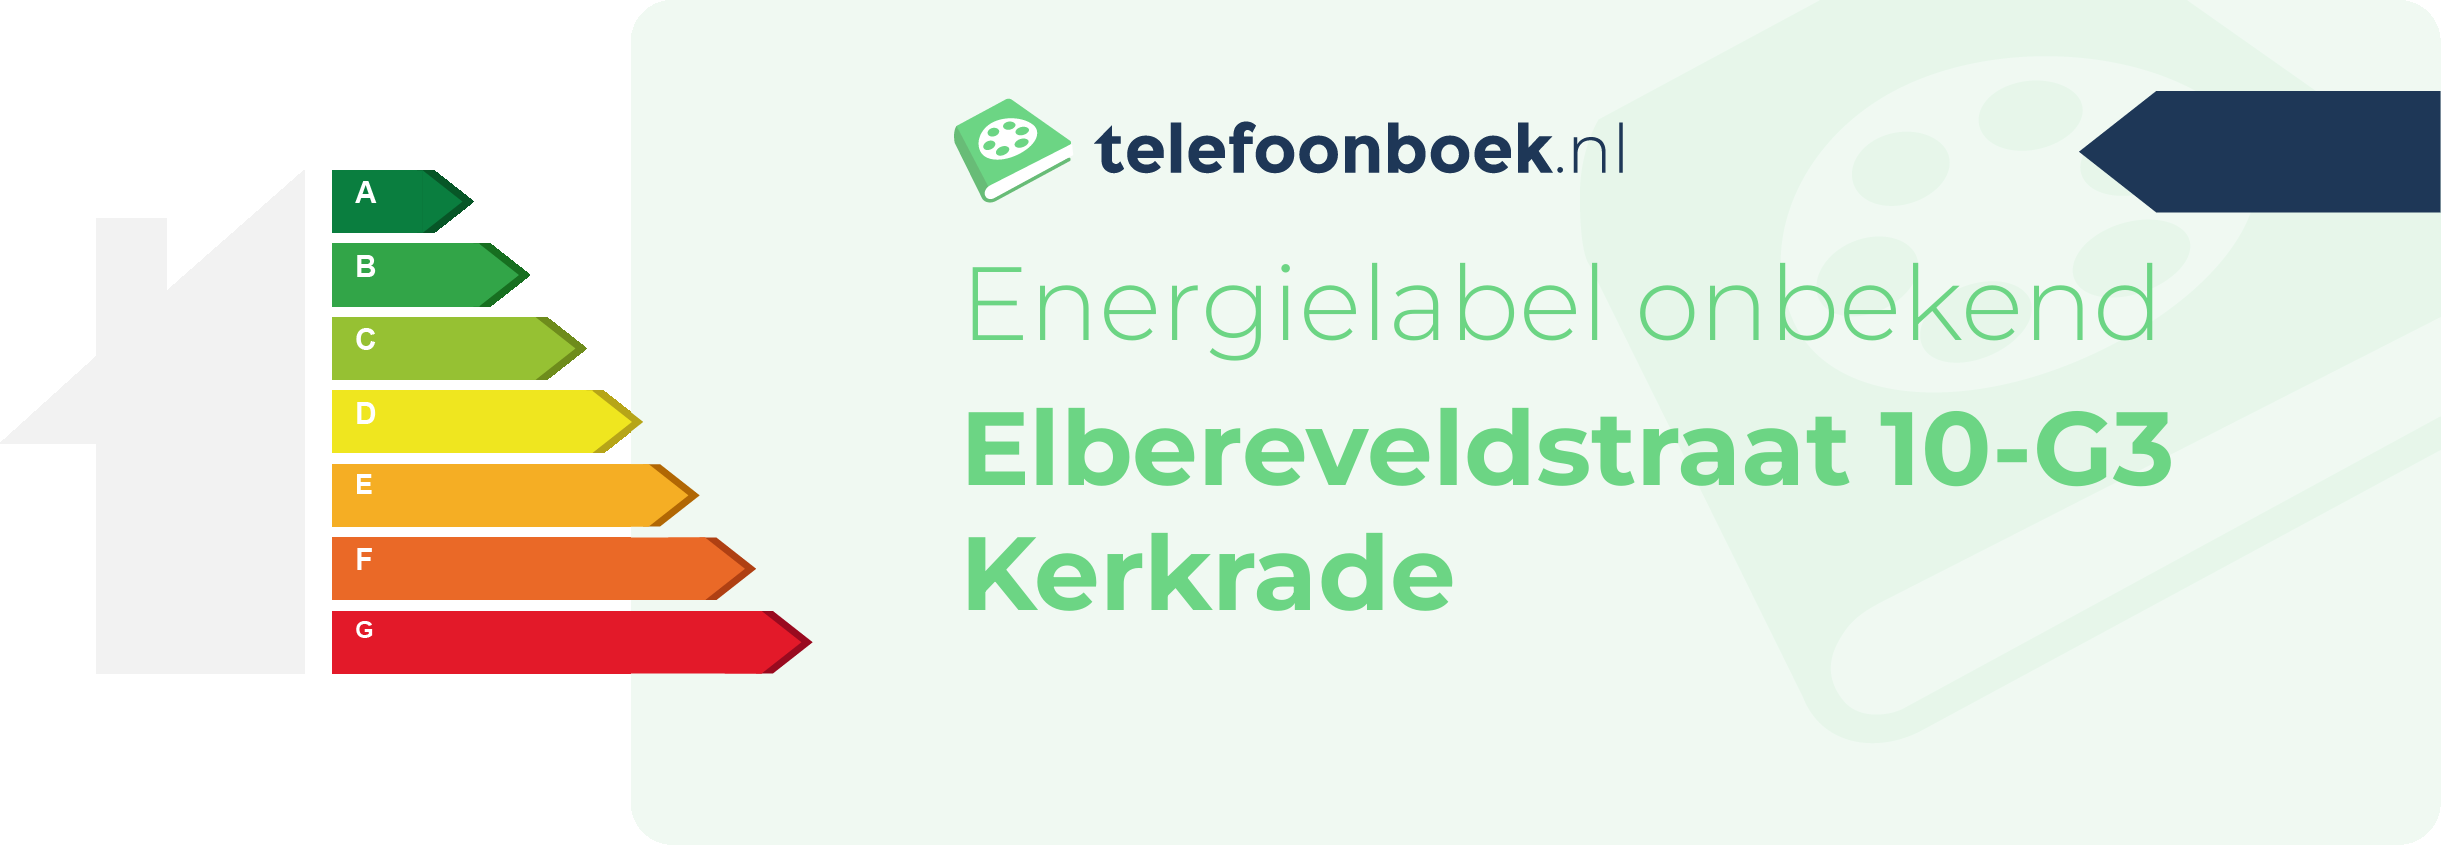 Energielabel Elbereveldstraat 10-G3 Kerkrade